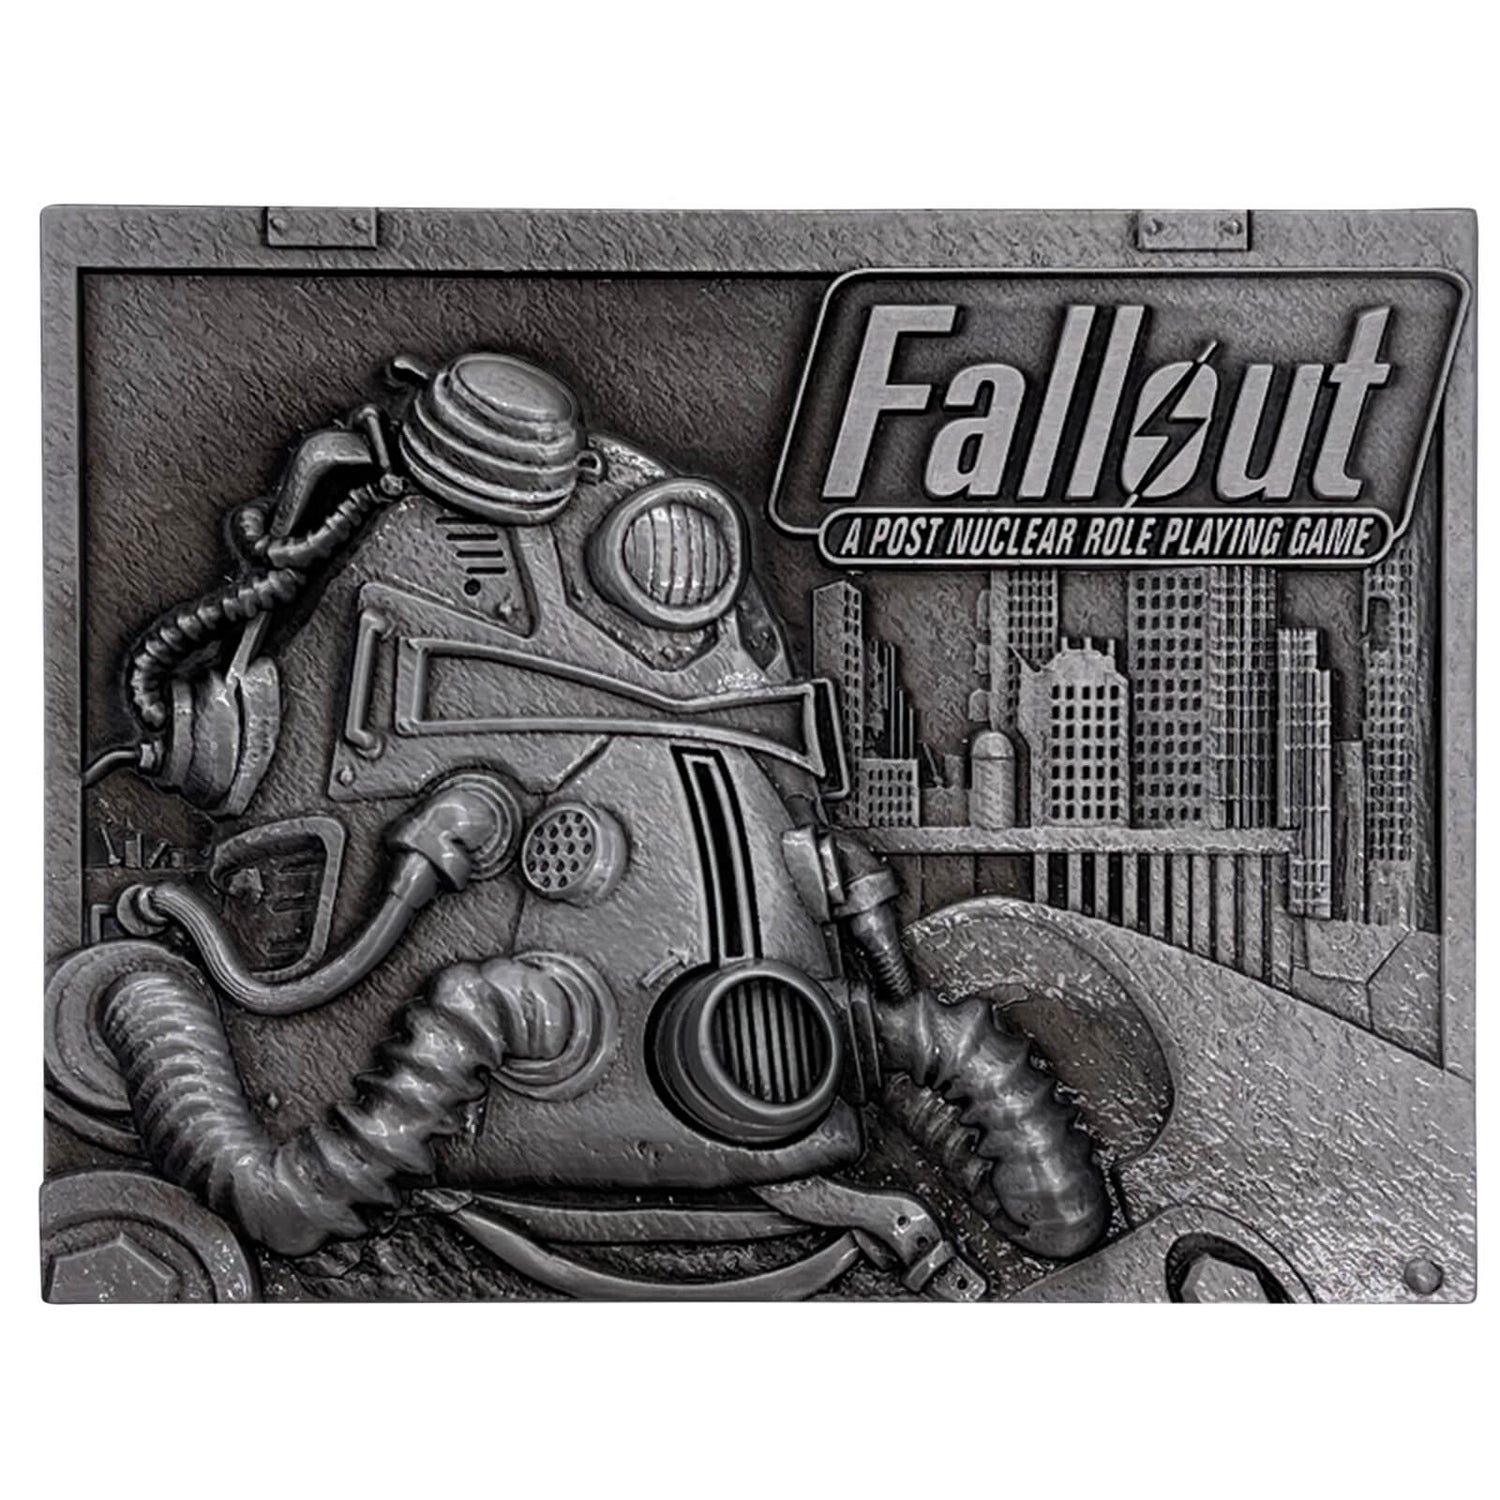 Fanattik Fallout Limited Edition 25th Anniversary Ingot